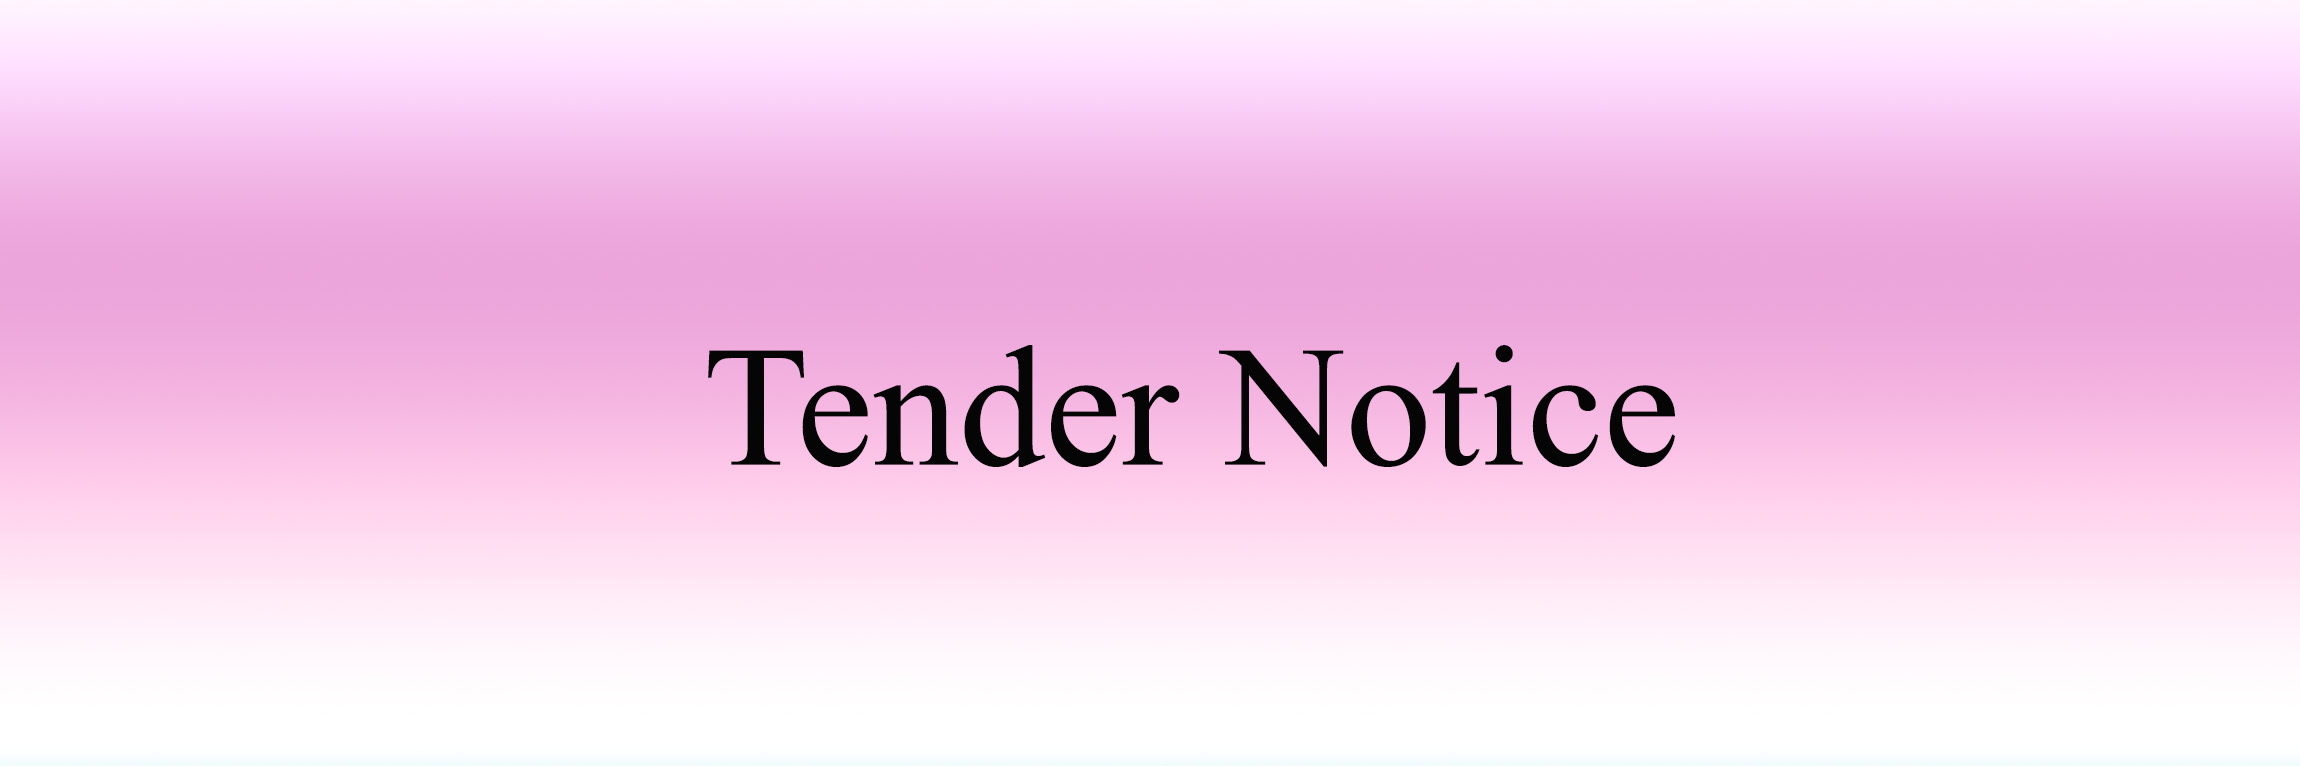 tender-N